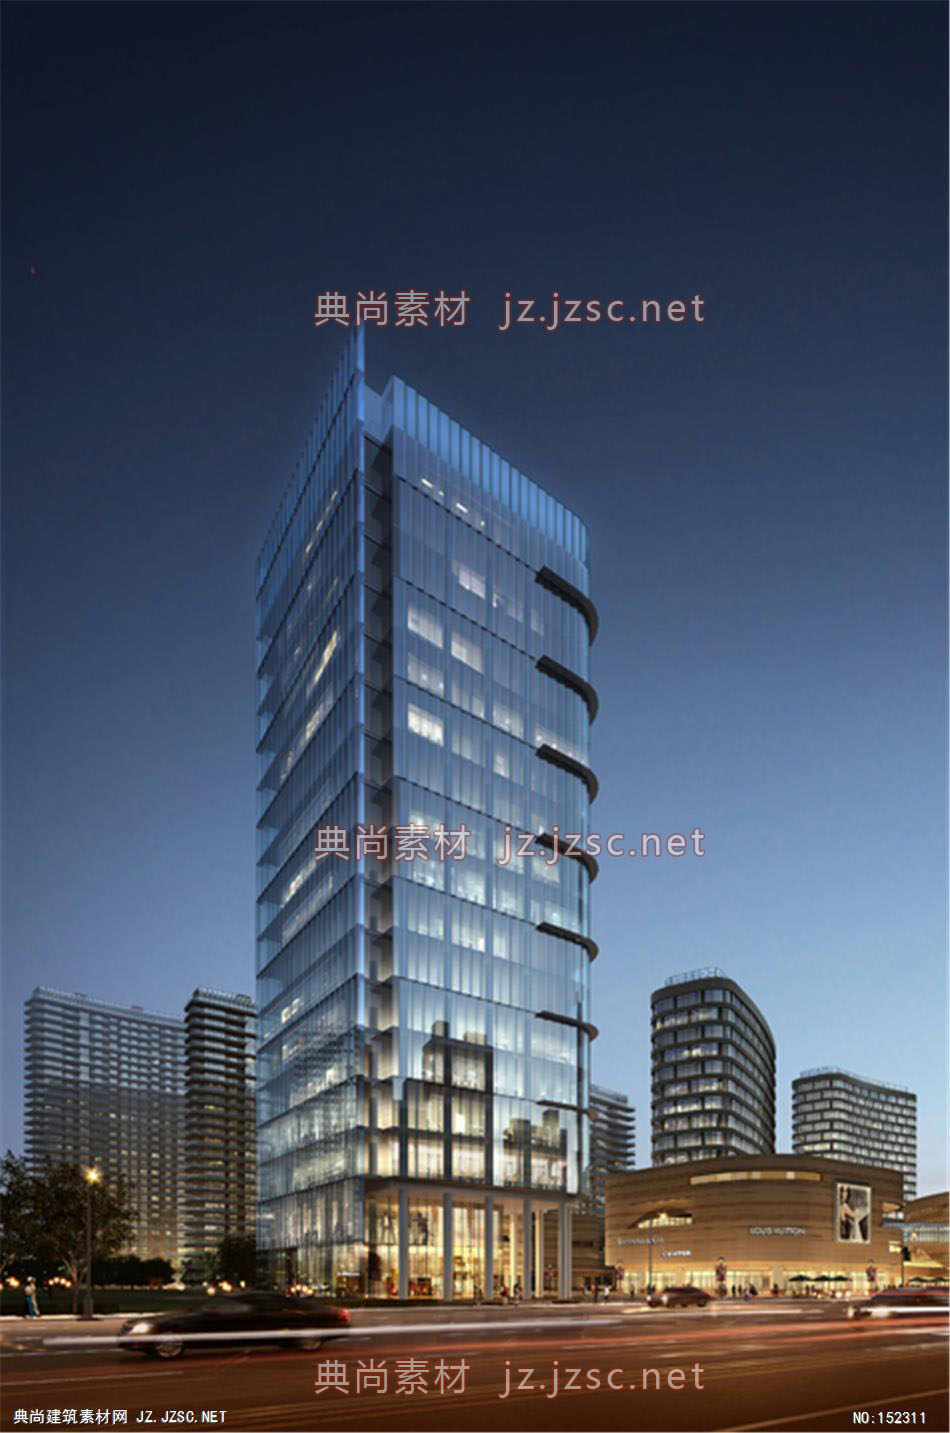 江电综合开发项目02 商业建筑效果图 商业效果图